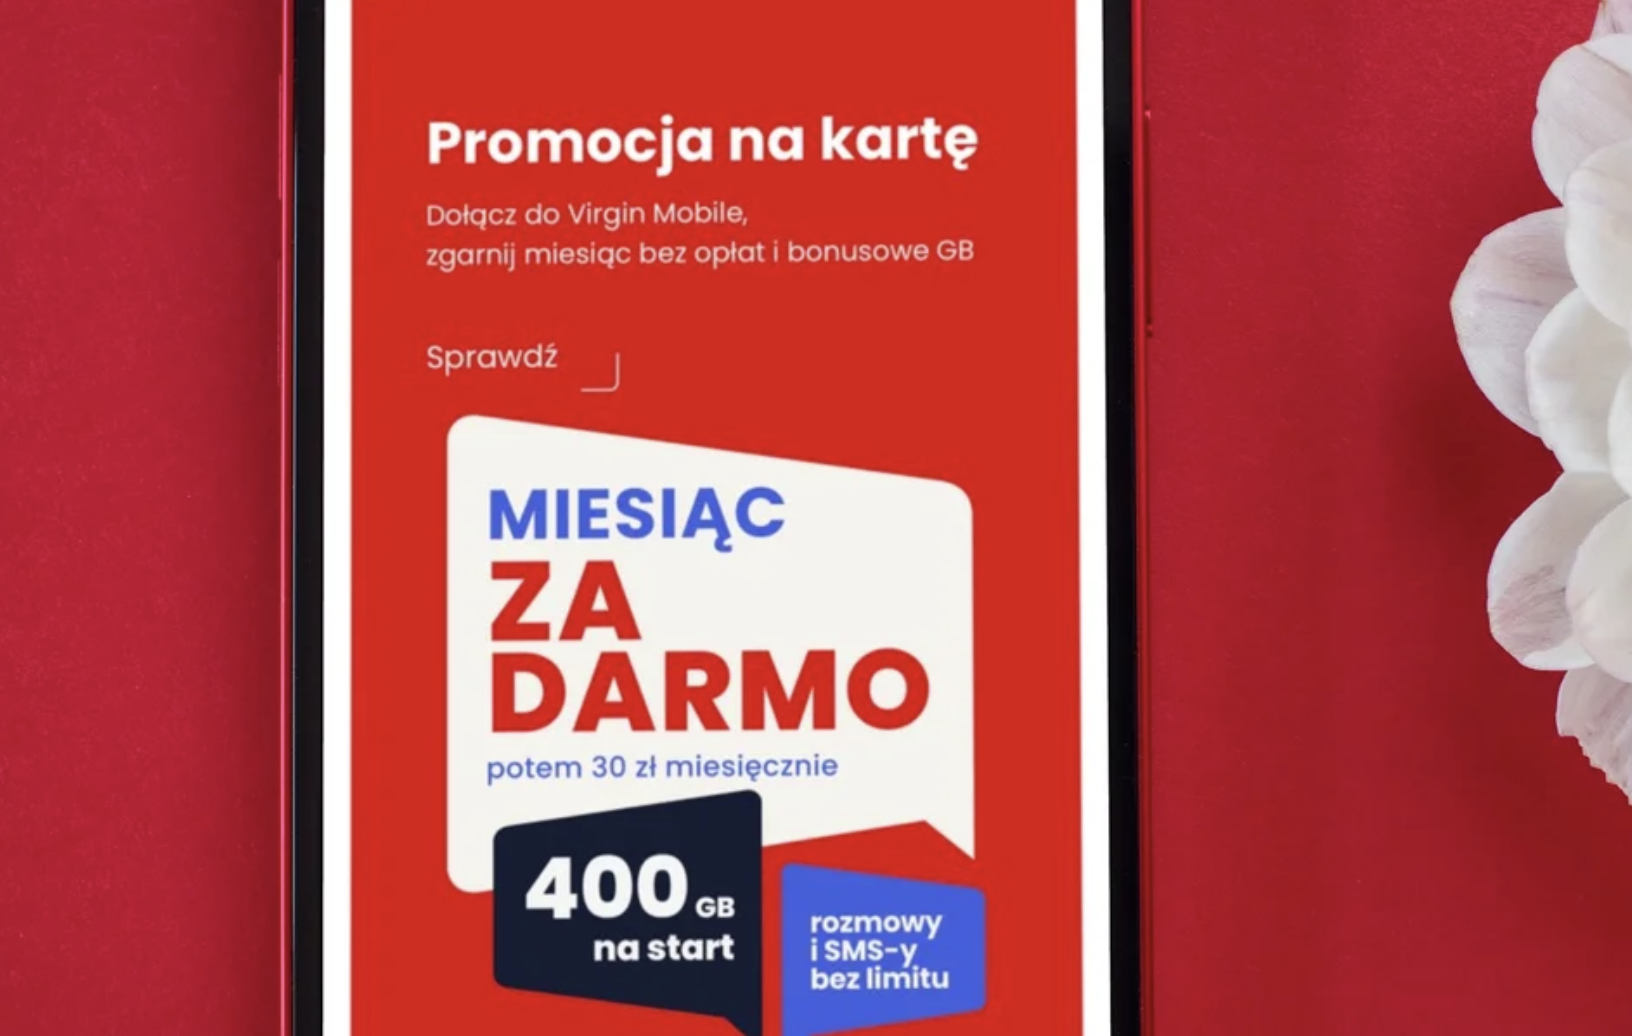 Wakacyjna promocja: Miesiąc za darmo dla nowych klientów Virgin Mobile na kartę